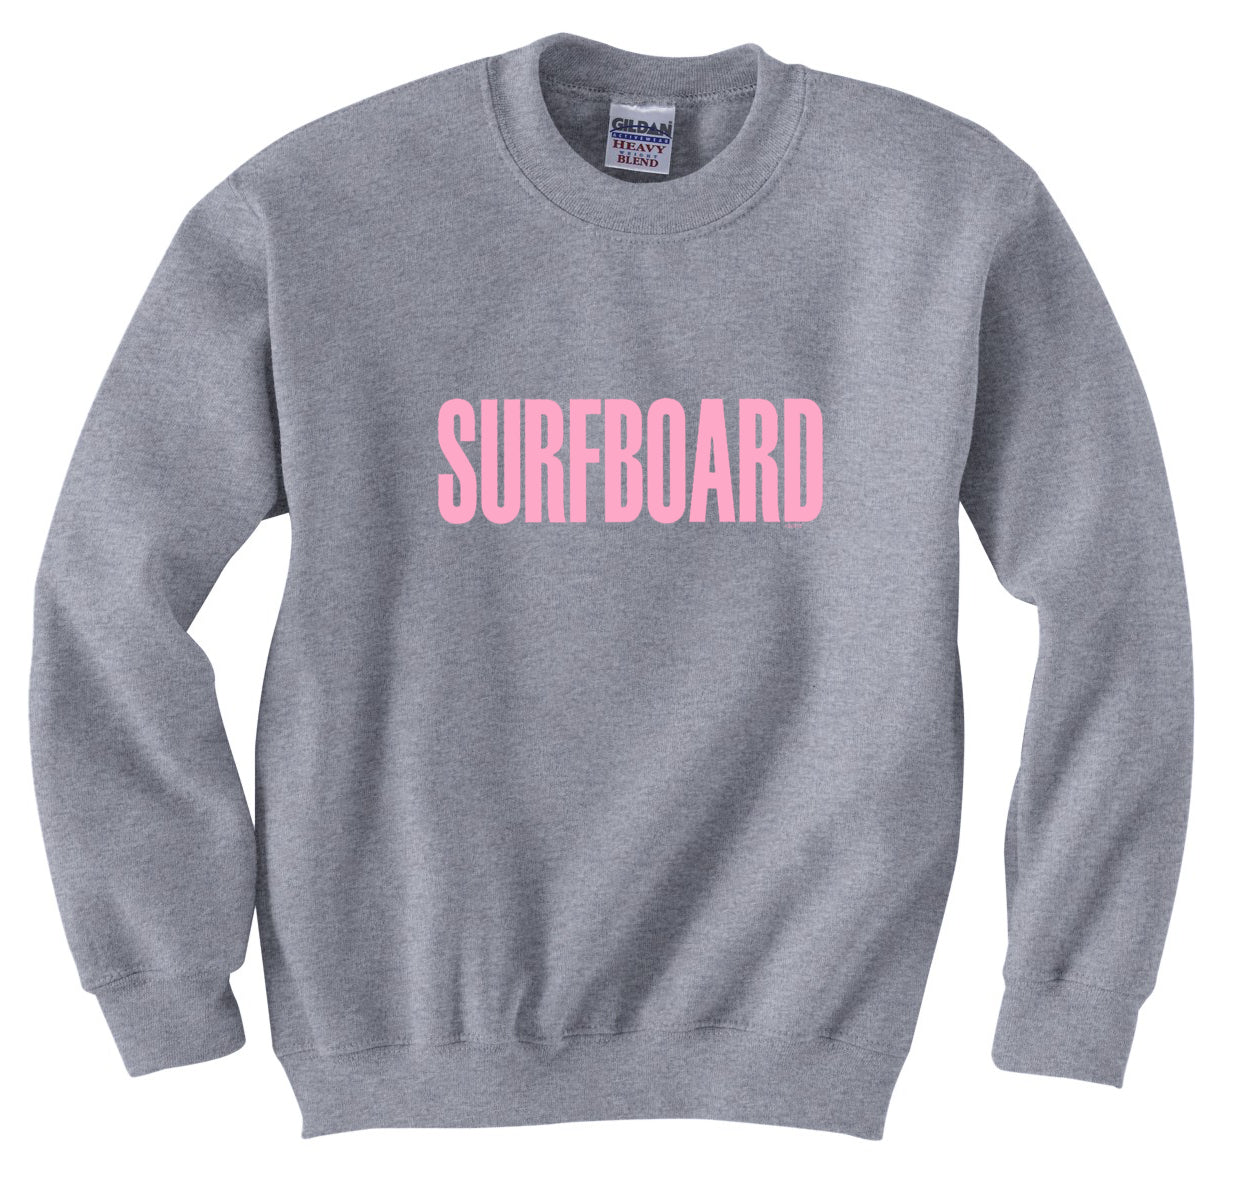 Surfboard Crewneck Sweatshirt